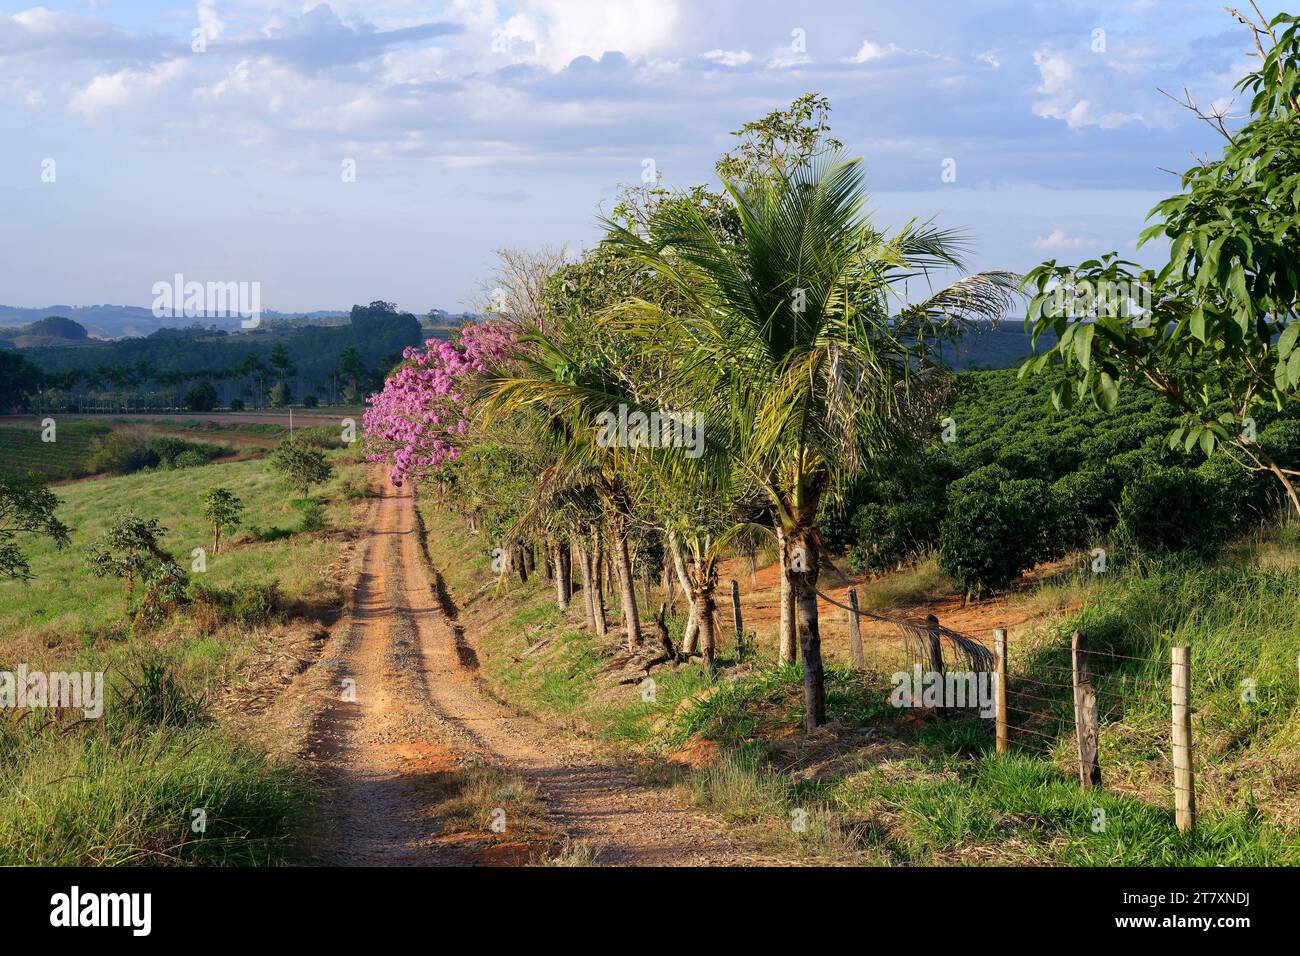 Route de sol rouge, paysage de Serra da Canastra, état de Minas Gerais, Brésil, Amérique du Sud Banque D'Images